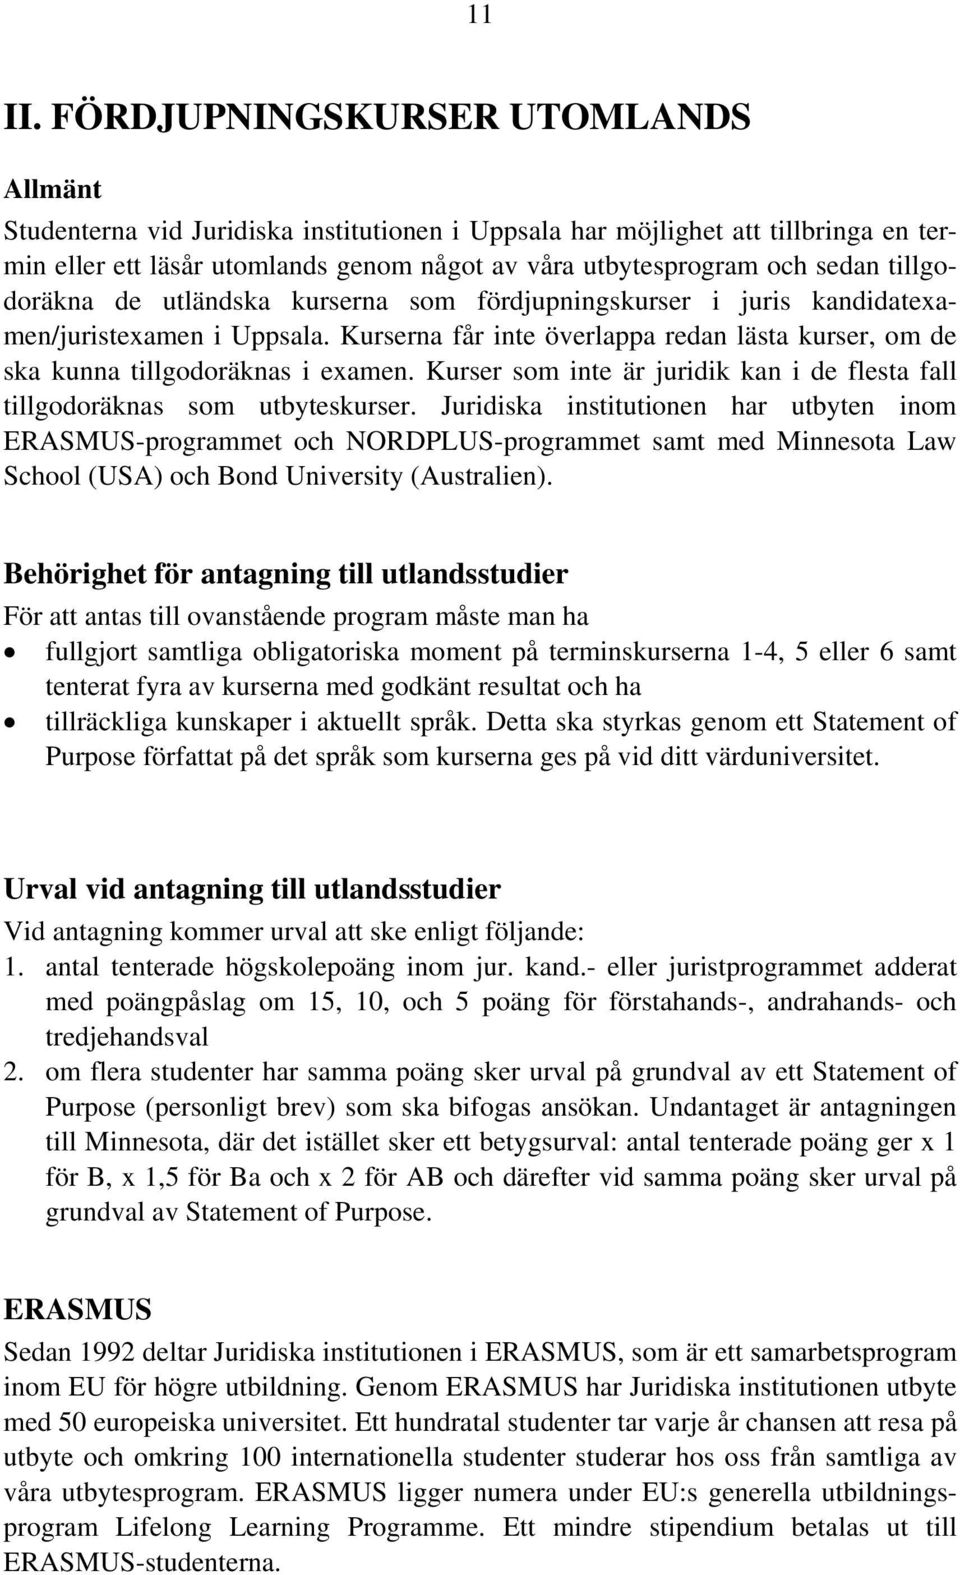 tillgodoräkna de utländska kurserna som fördjupningskurser i juris kandidatexamen/juristexamen i Uppsala. Kurserna får inte överlappa redan lästa kurser, om de ska kunna tillgodoräknas i examen.